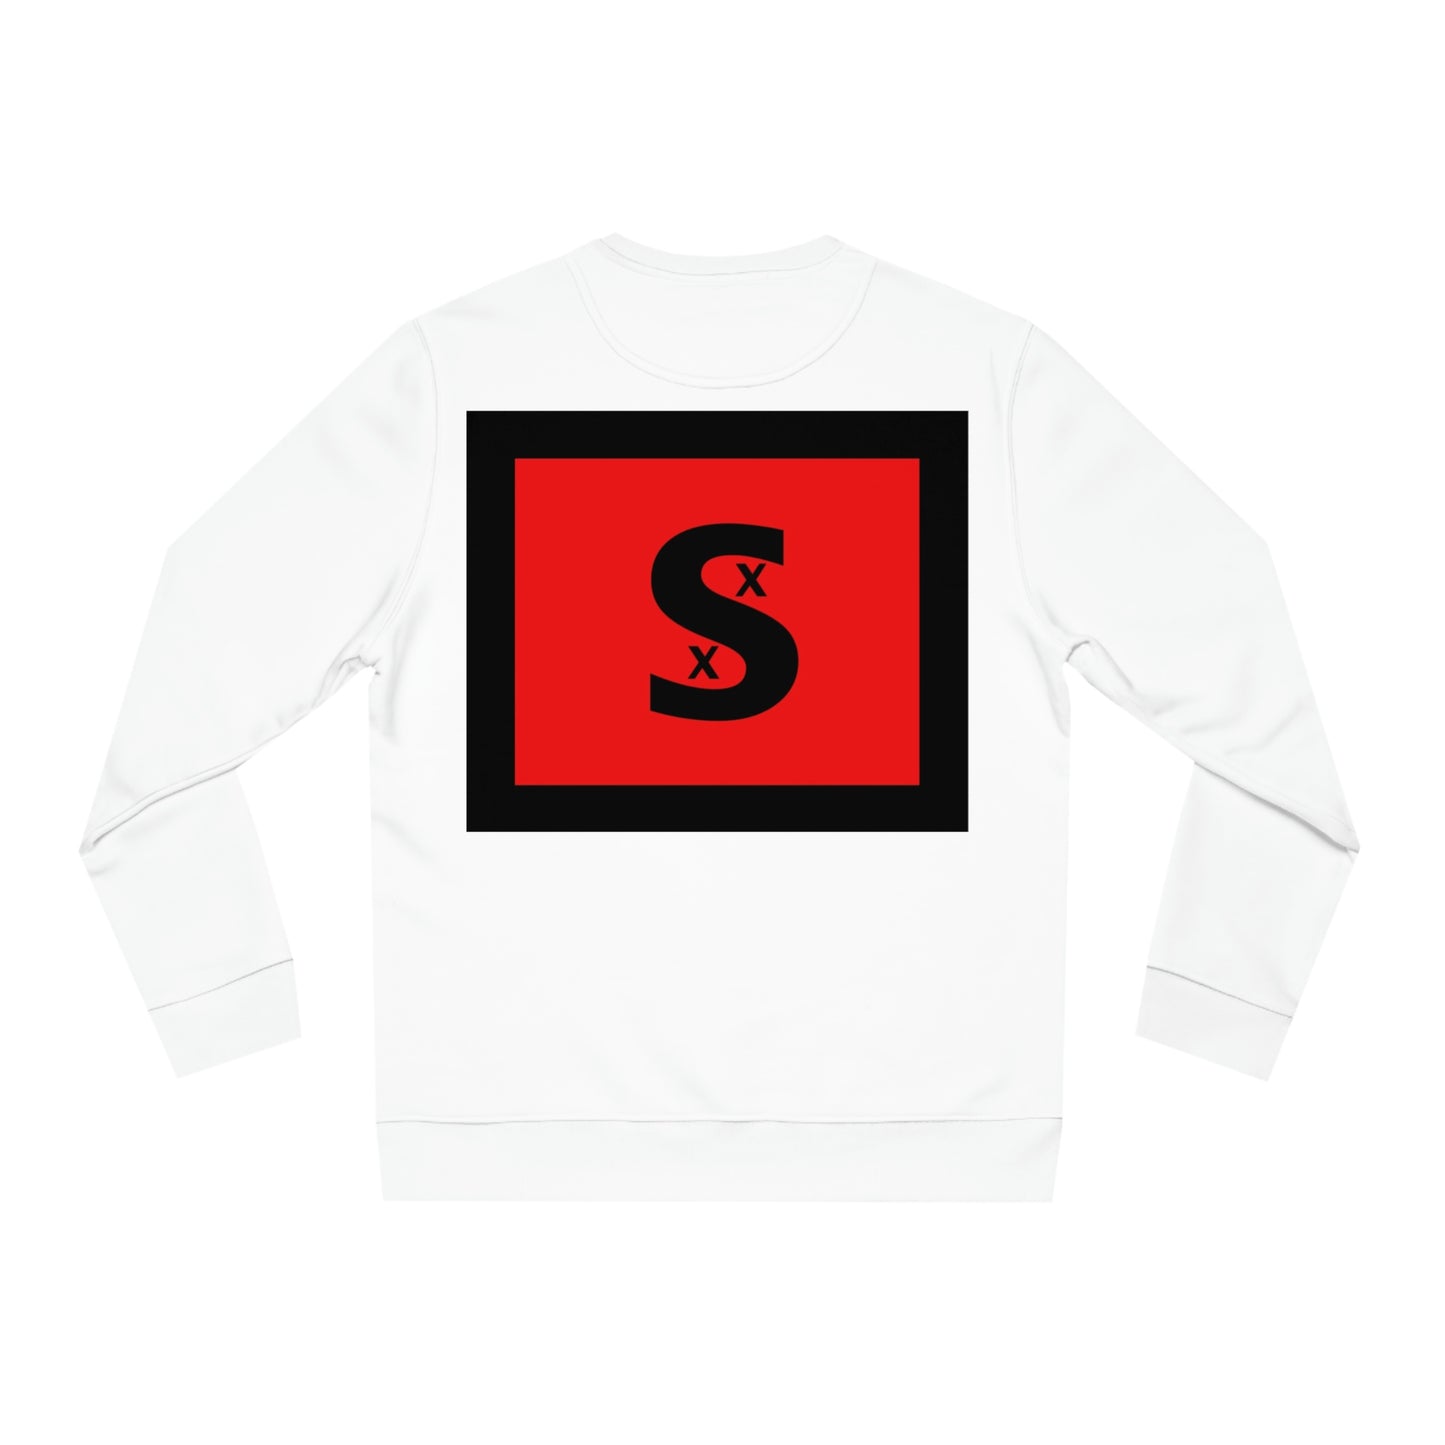 STILLGETPAID® APPAREL Unisex Changer Sweatshirt